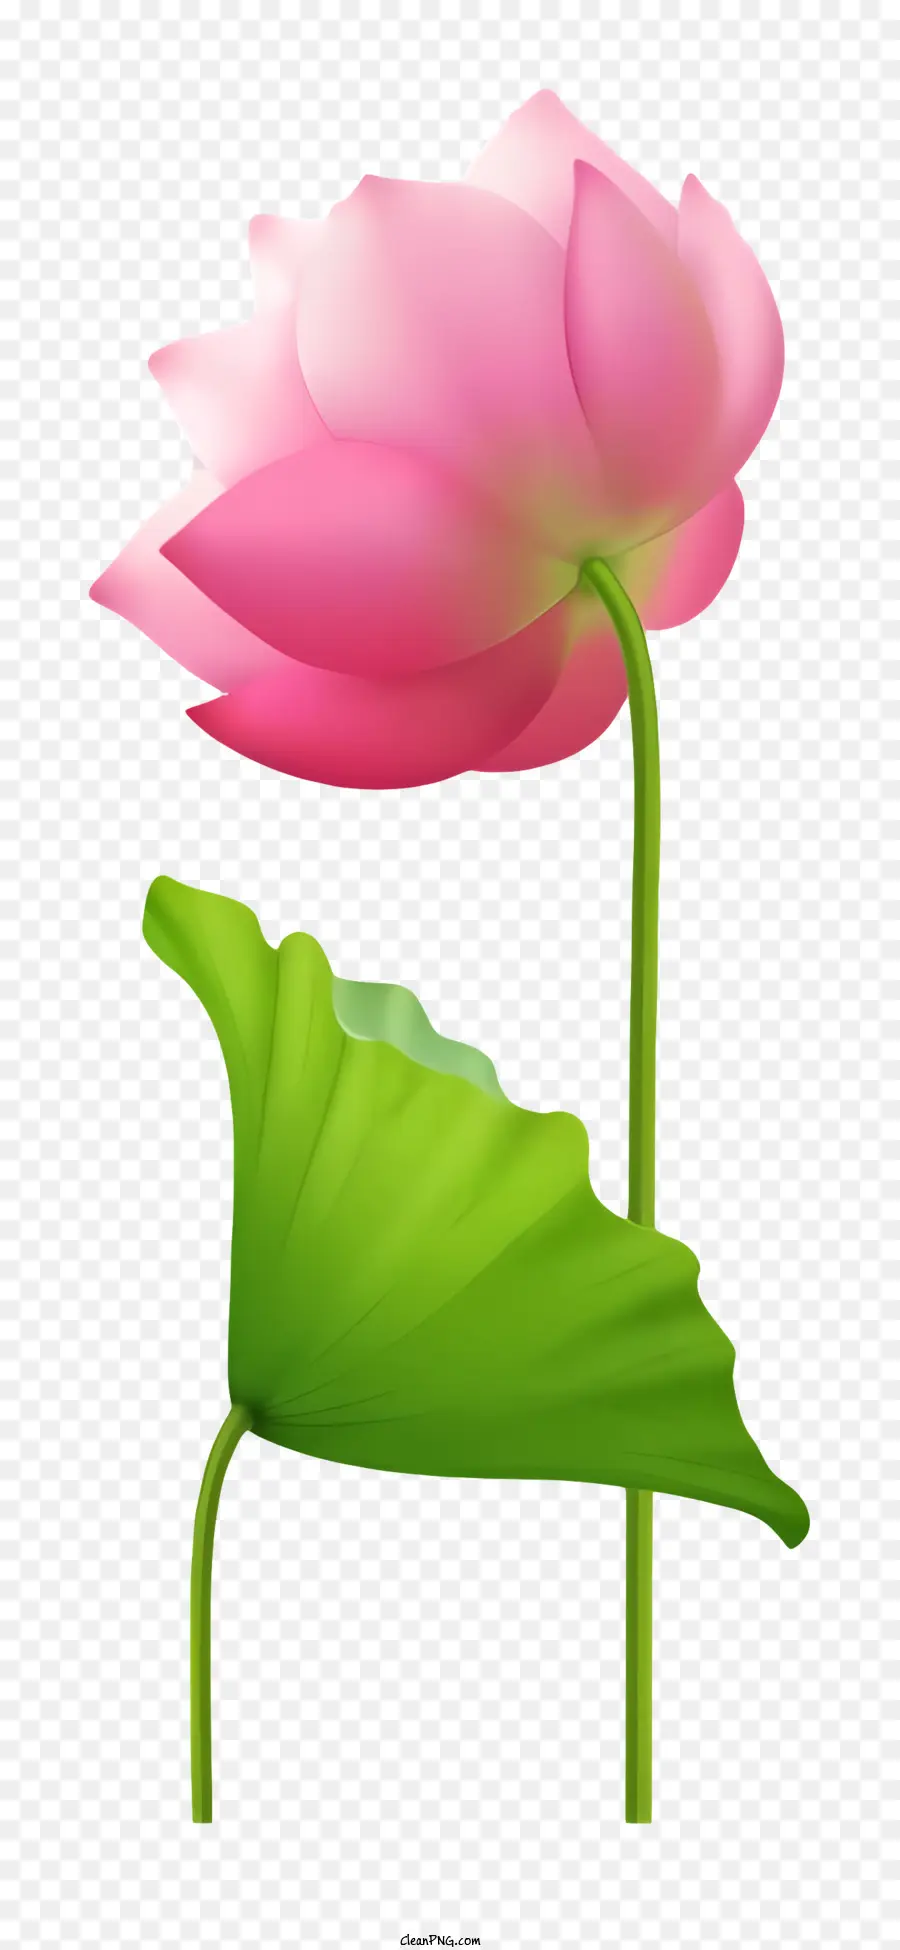 Biểu tượng màu hồng hoa sen hoa màu đen lá xanh lá cây mở ra - Hoa sen hồng với lá màu xanh lá cây trên nền đen